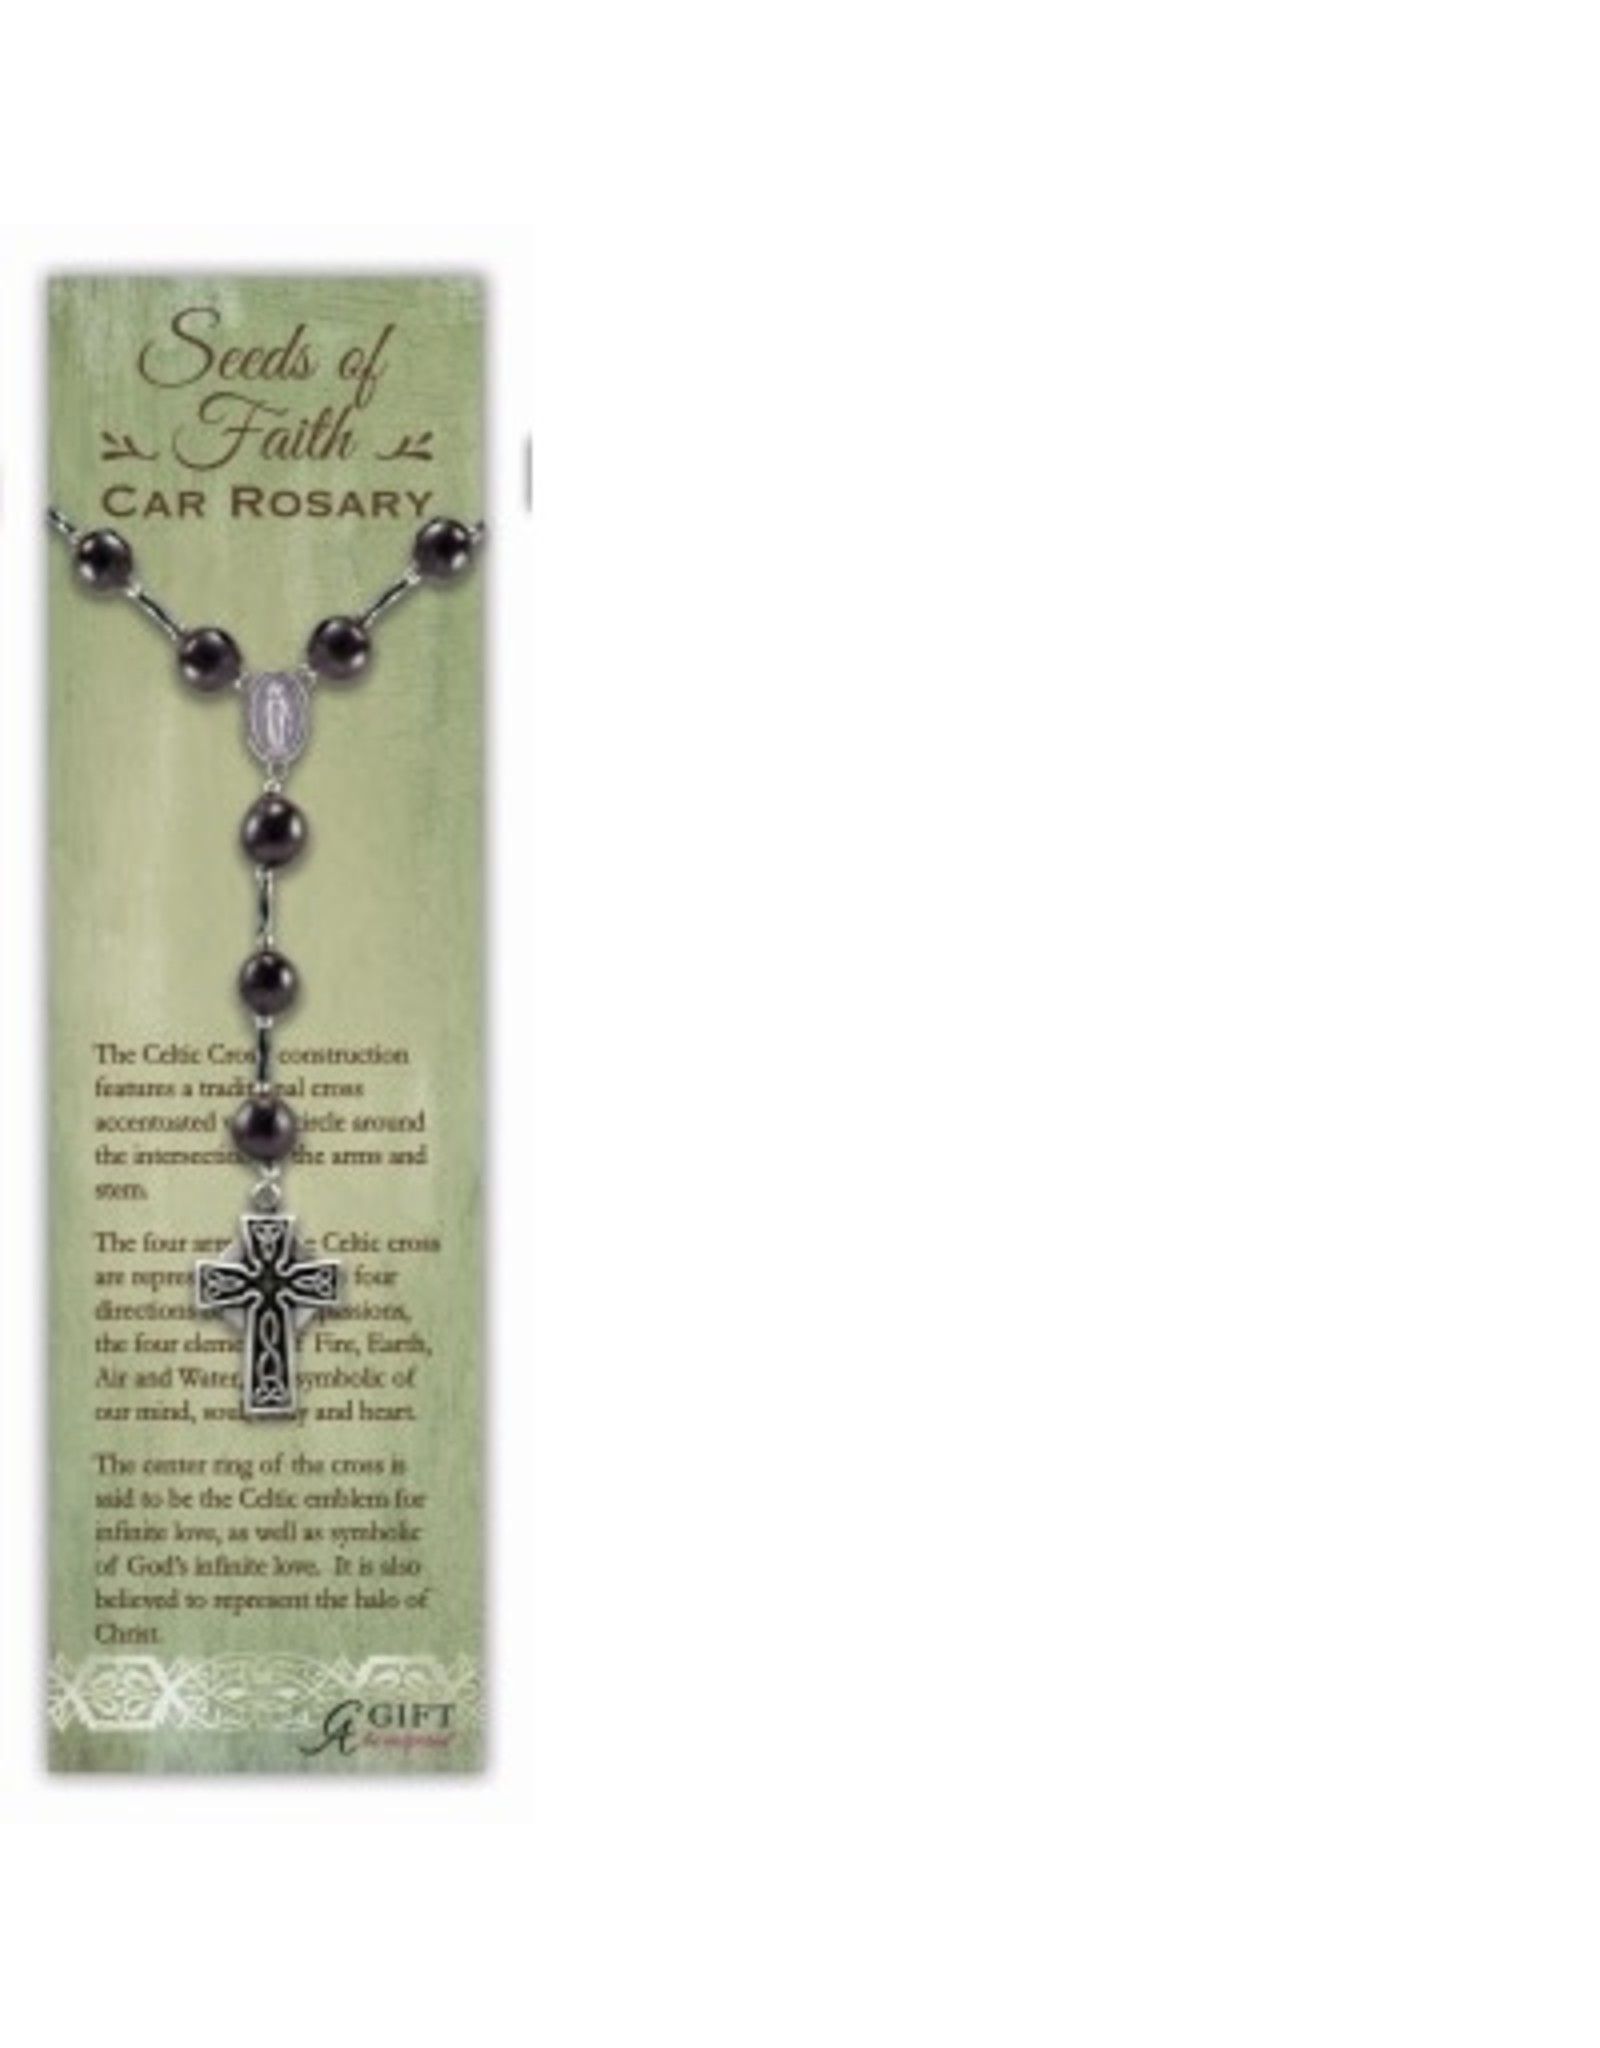 Auto Rosary - Celtic Cross Seeds of Faith